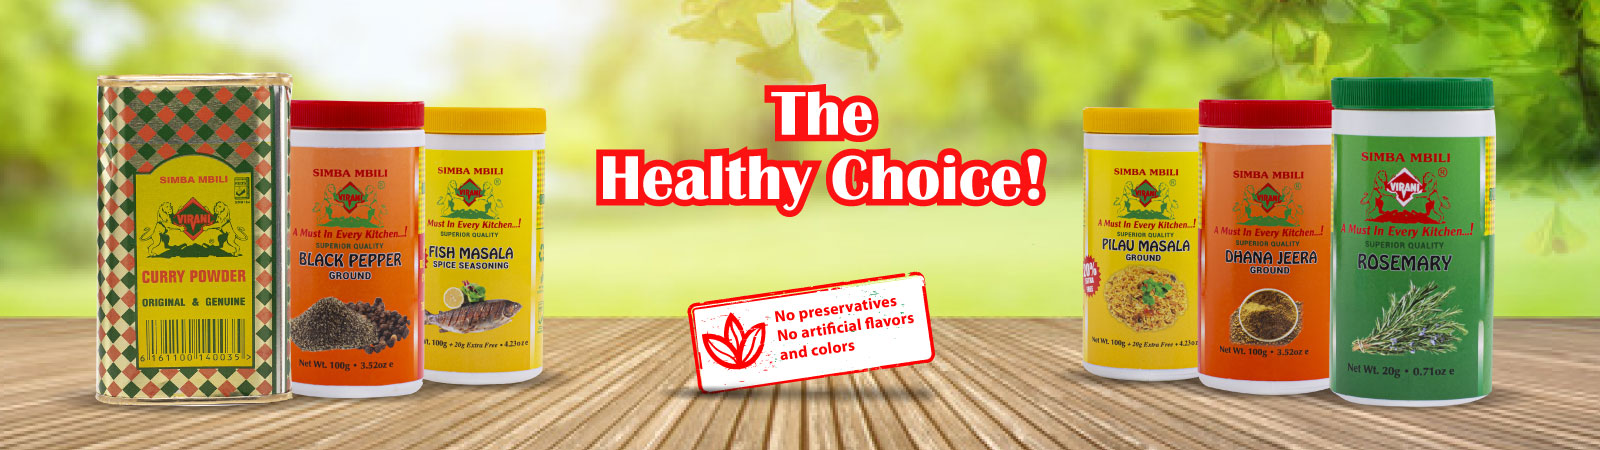 Simba Mbili - The healthy choice